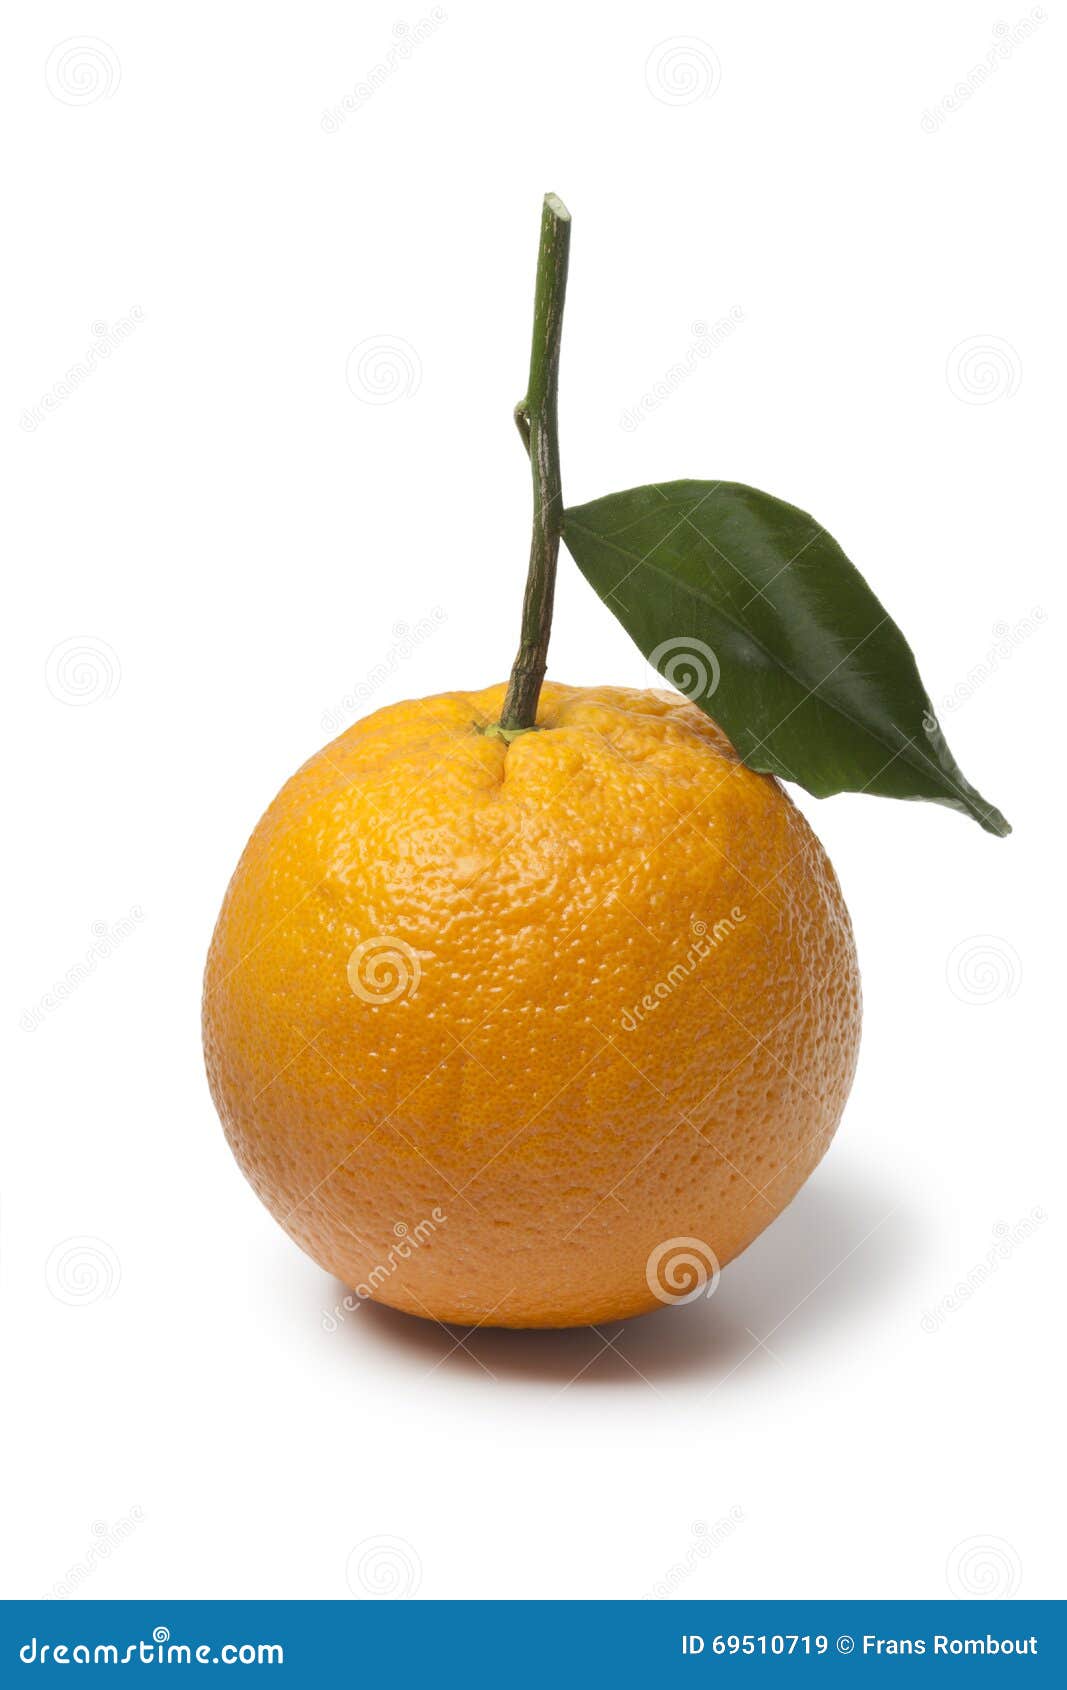 Single Whole Fresh Orange With A Leaf Stock Image Image Of Ripe